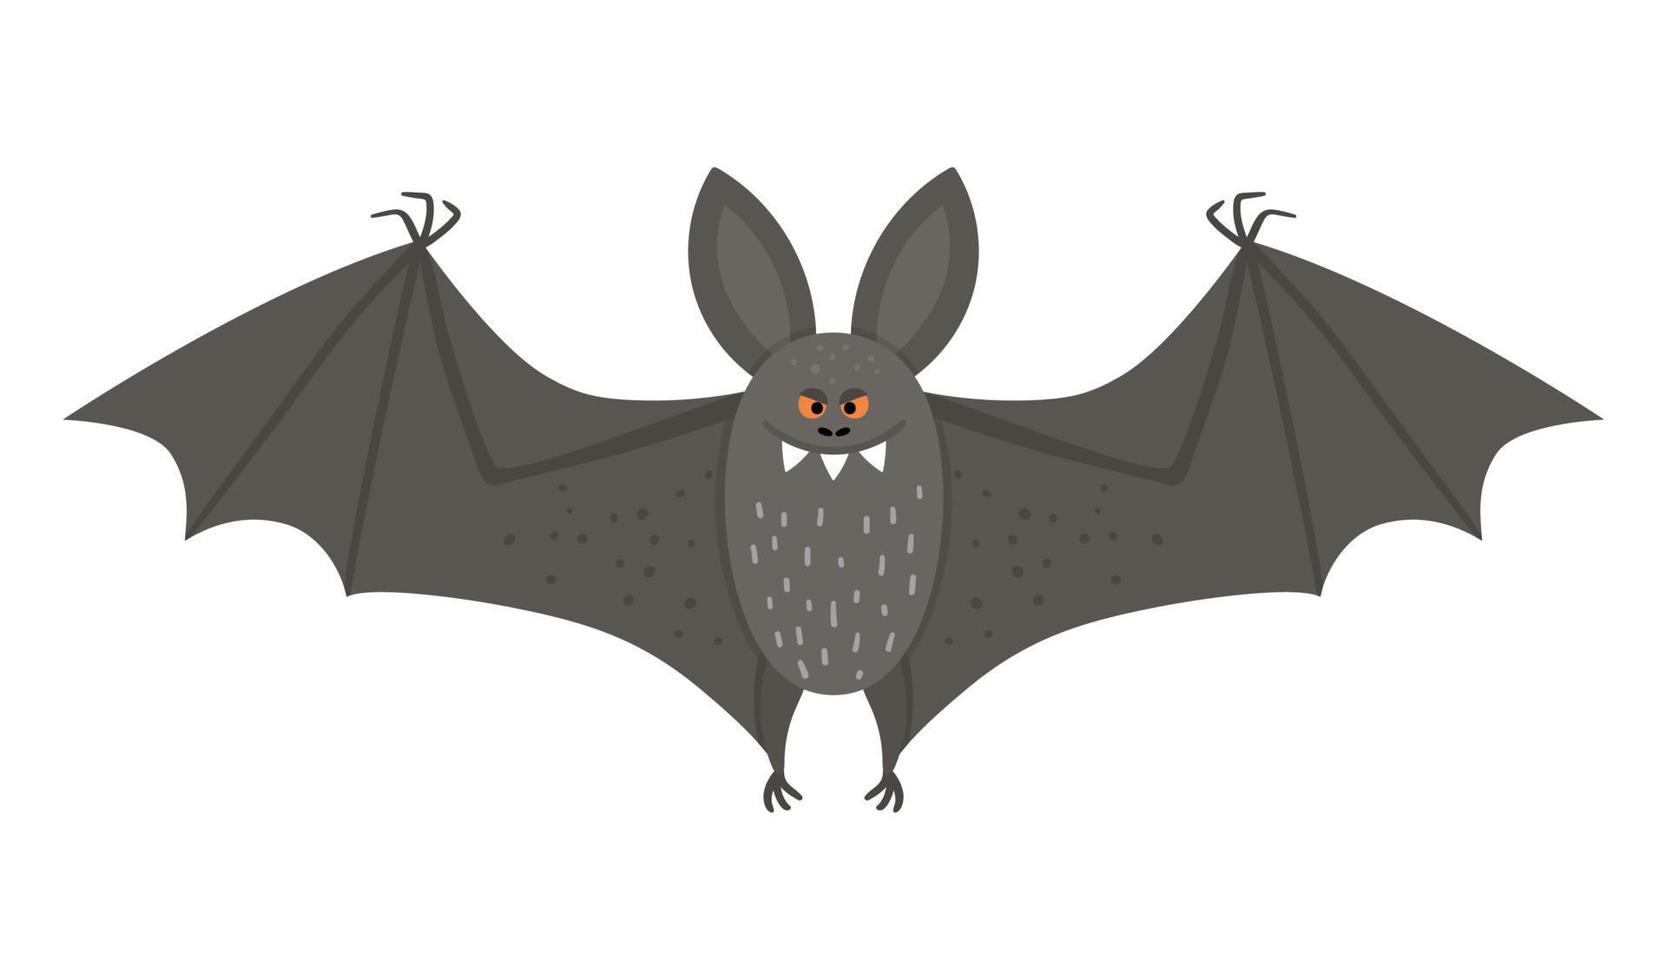 simpatico pipistrello vettoriale con ali spiegate. icona del personaggio di halloween. divertente autunno tutti i santi illustrazione vigilia con animale nero volante. disegno del segno del partito di Samhain per i bambini.